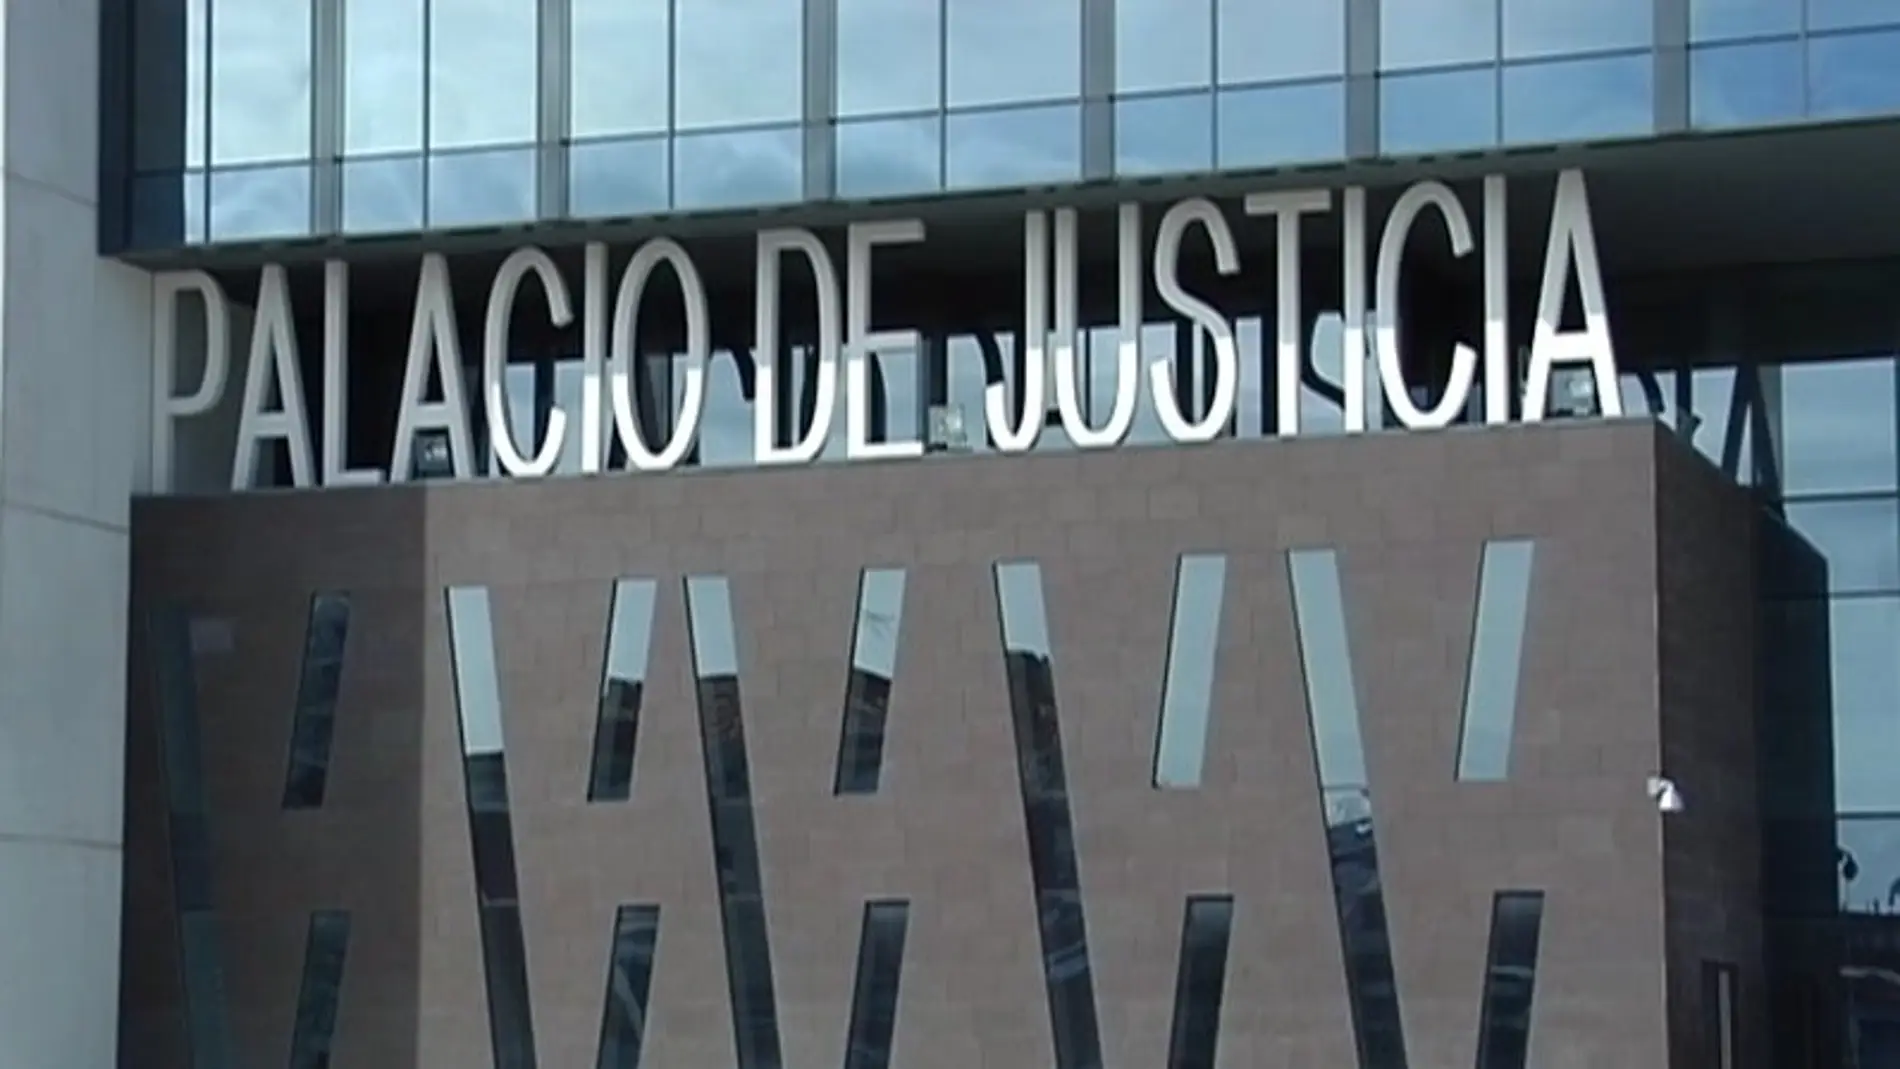 Palacio de Justicia de Gijón